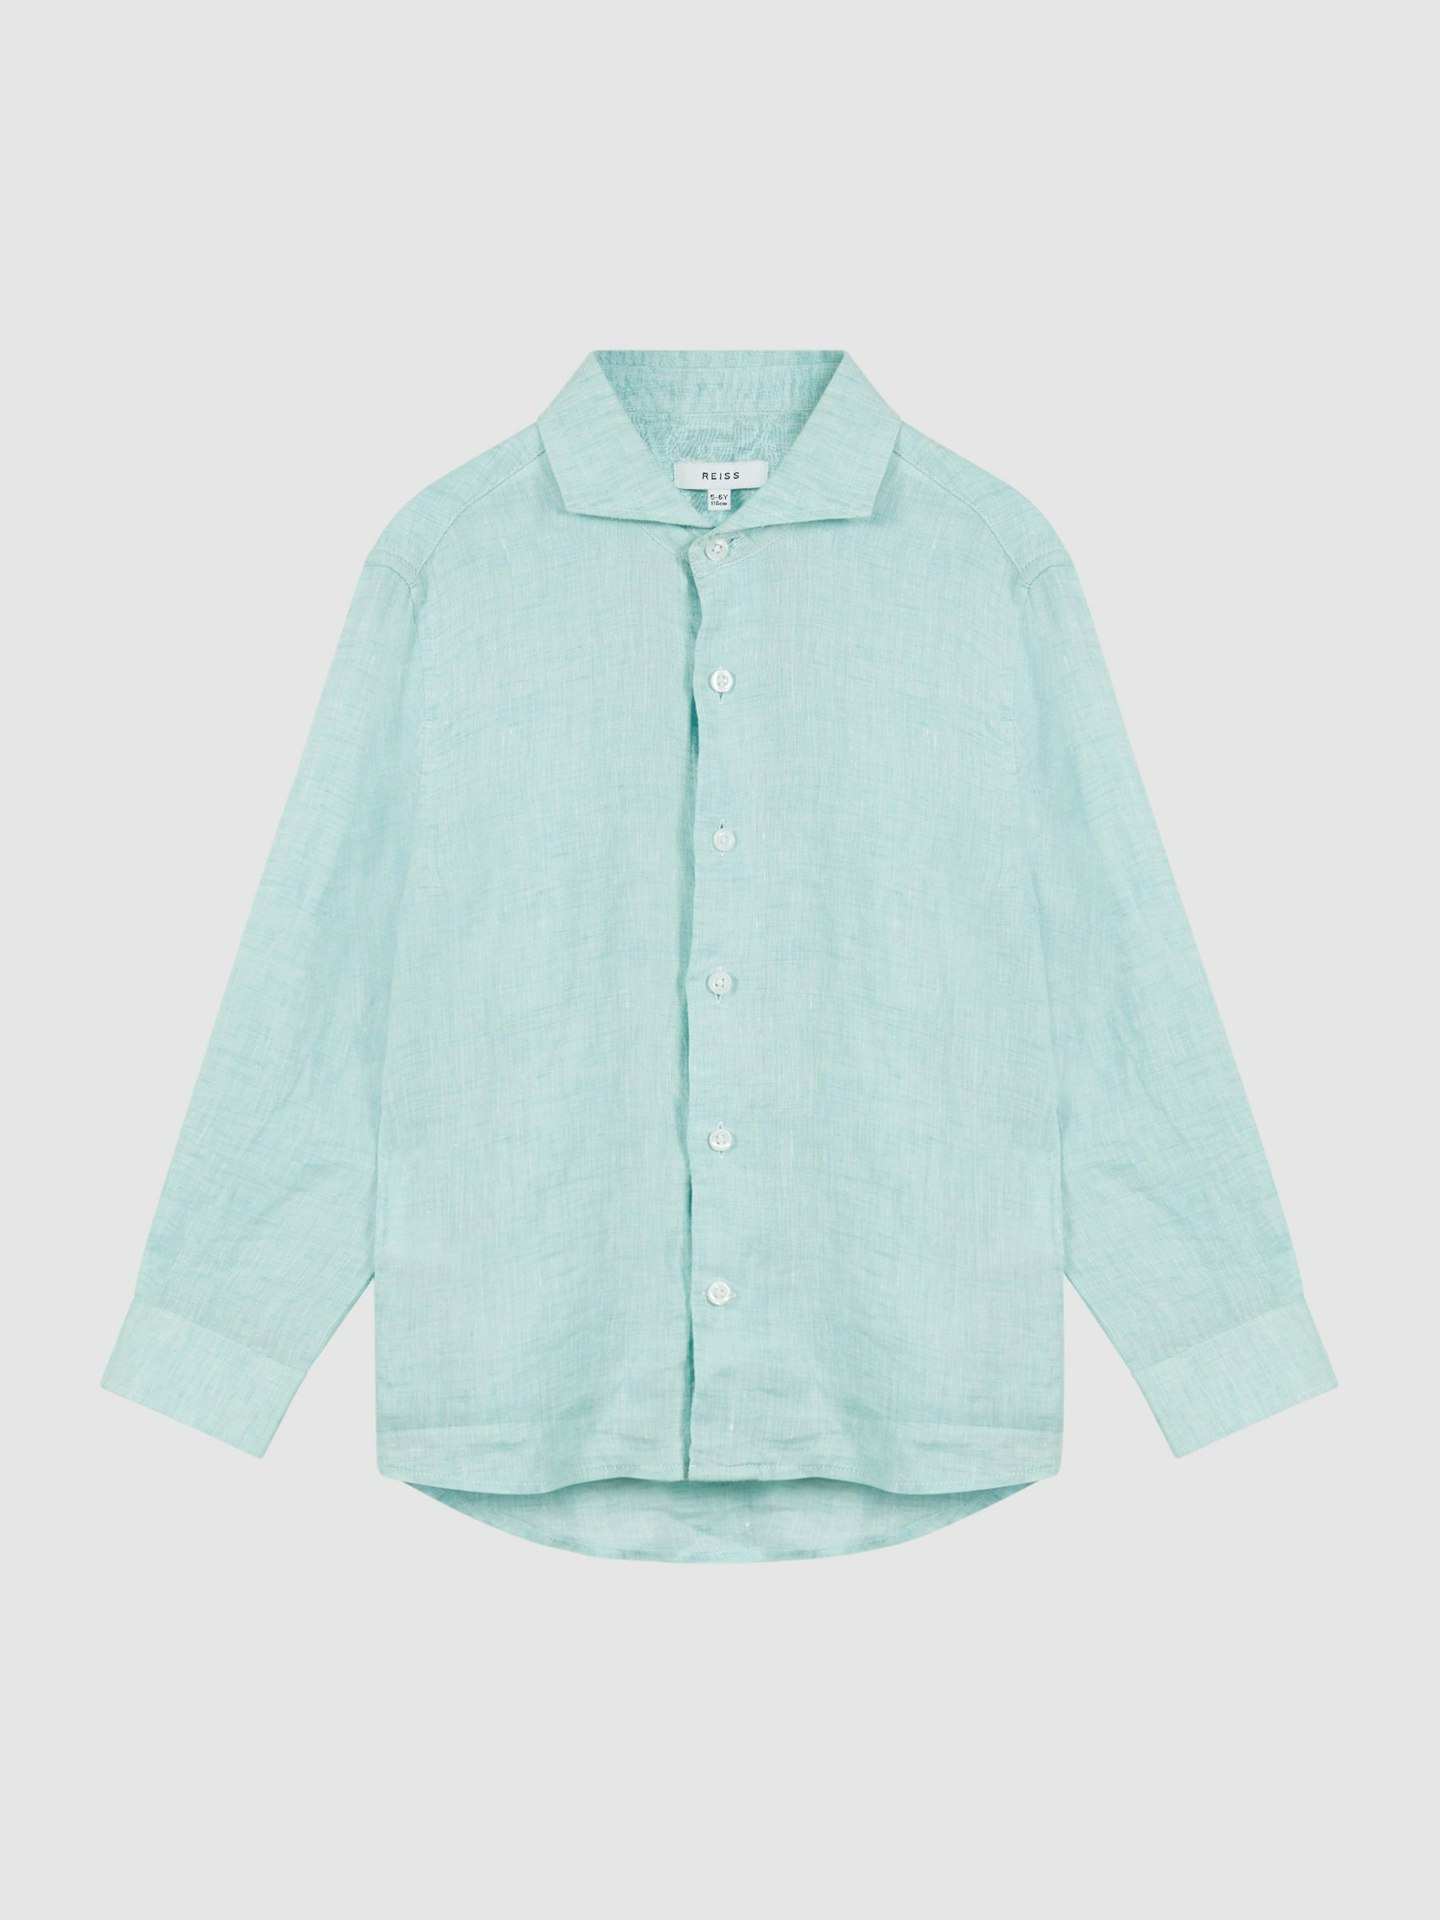 Long-Sleeve Linen Shirt, £36